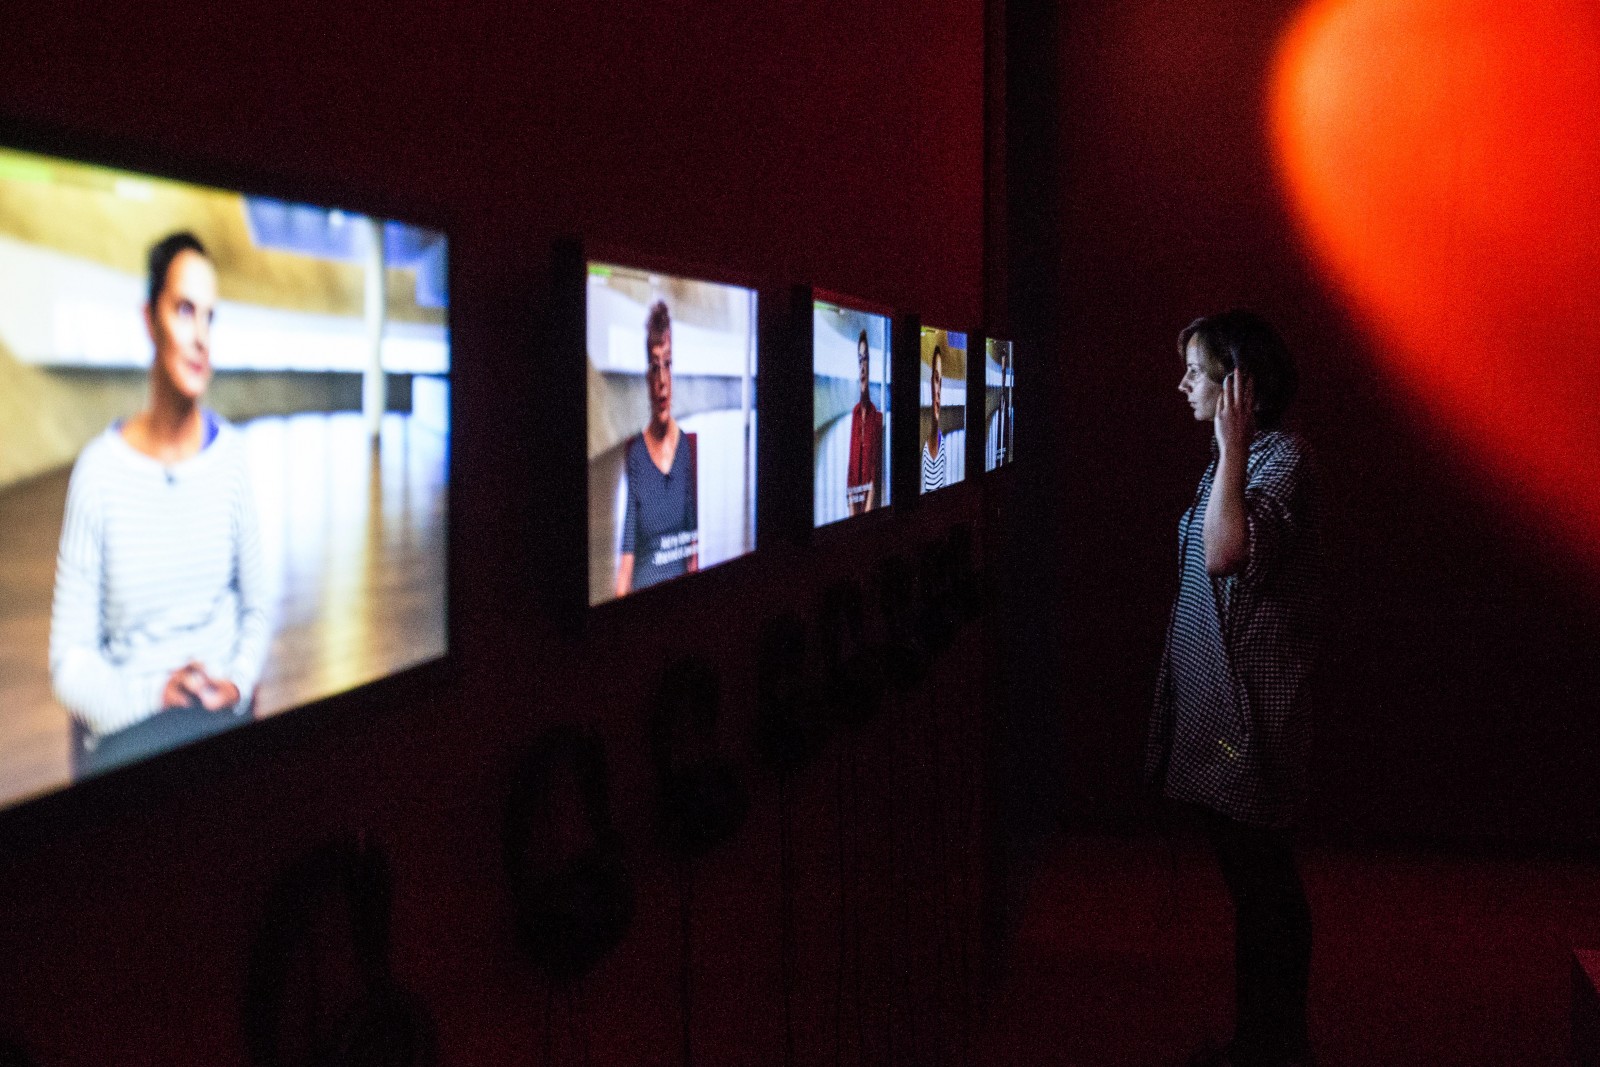 Dziewczyna stoi przed ekranami multimedialnymi, na których wyświetlają się sceny z filmu "Krew łączy i dzieli".